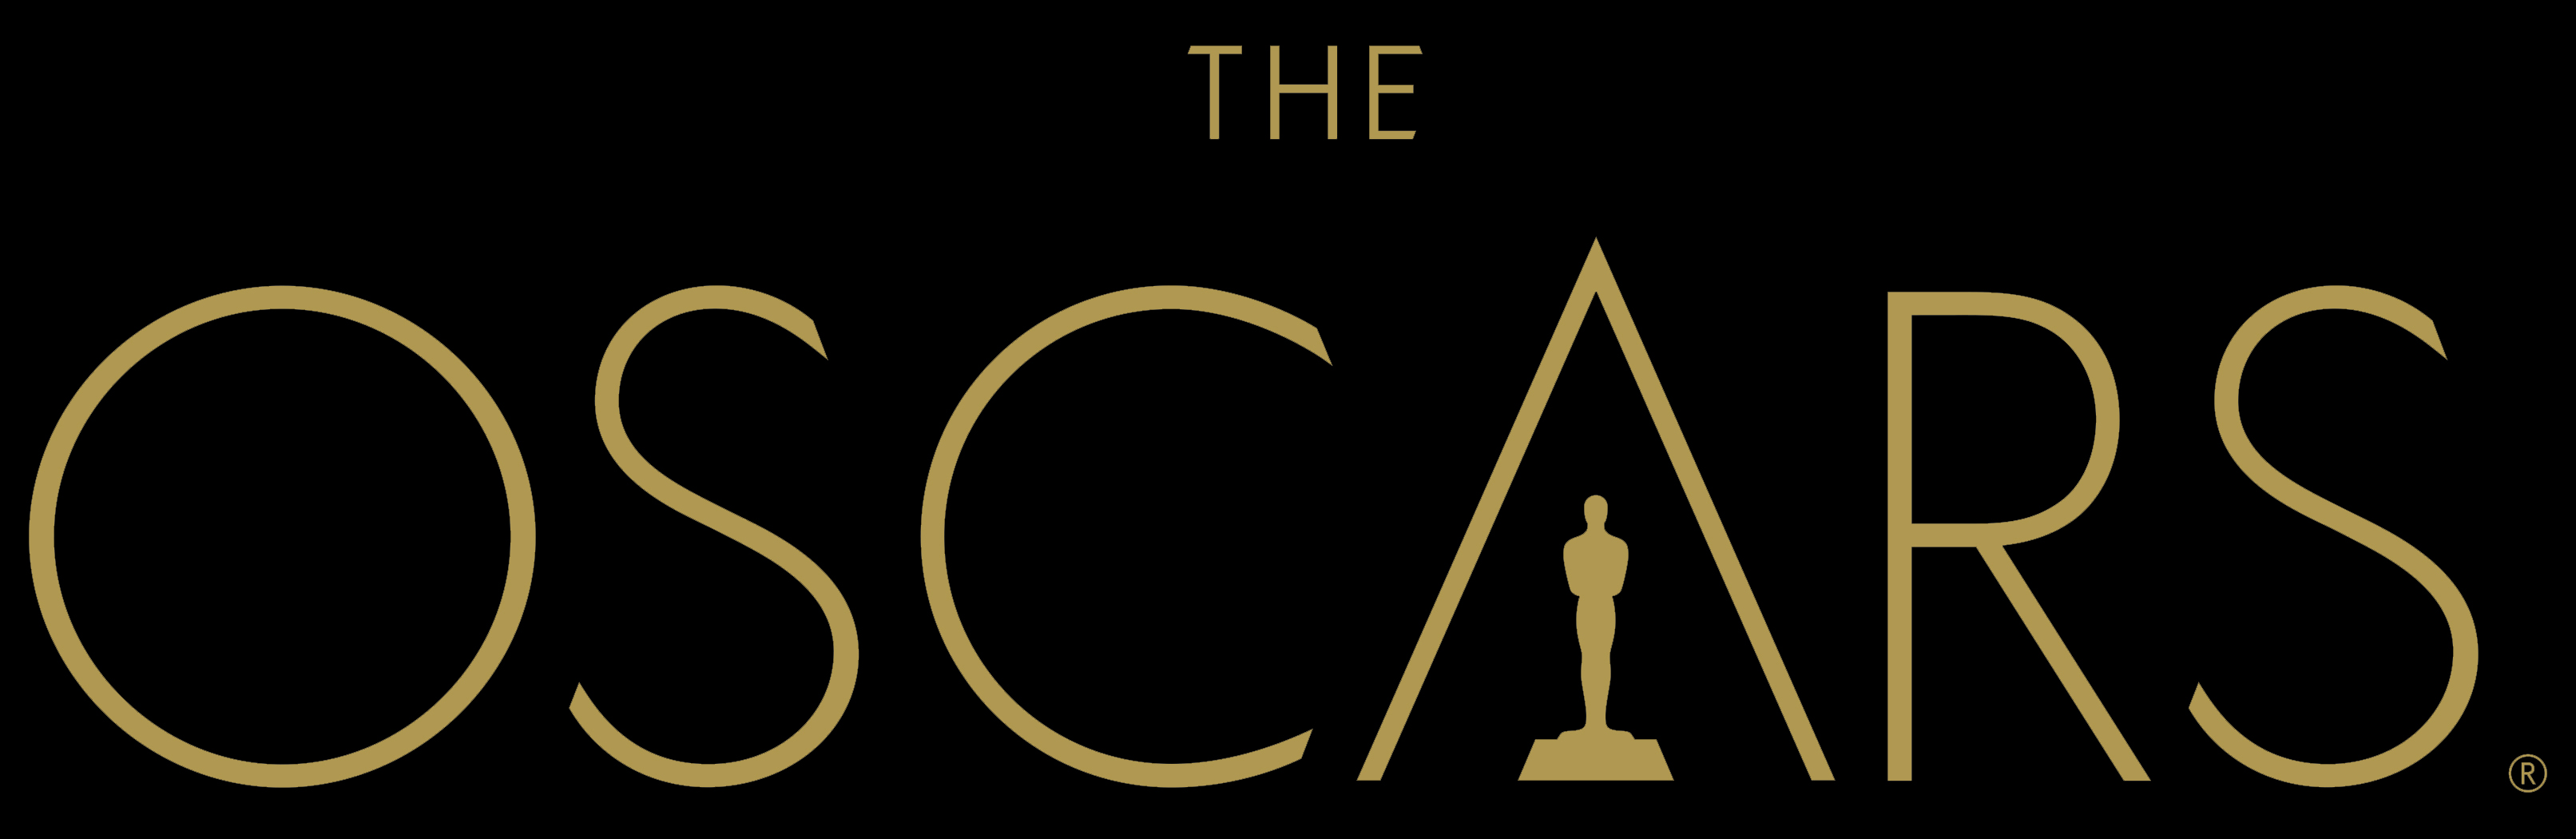 The Oscars. 86th Academy Awards.